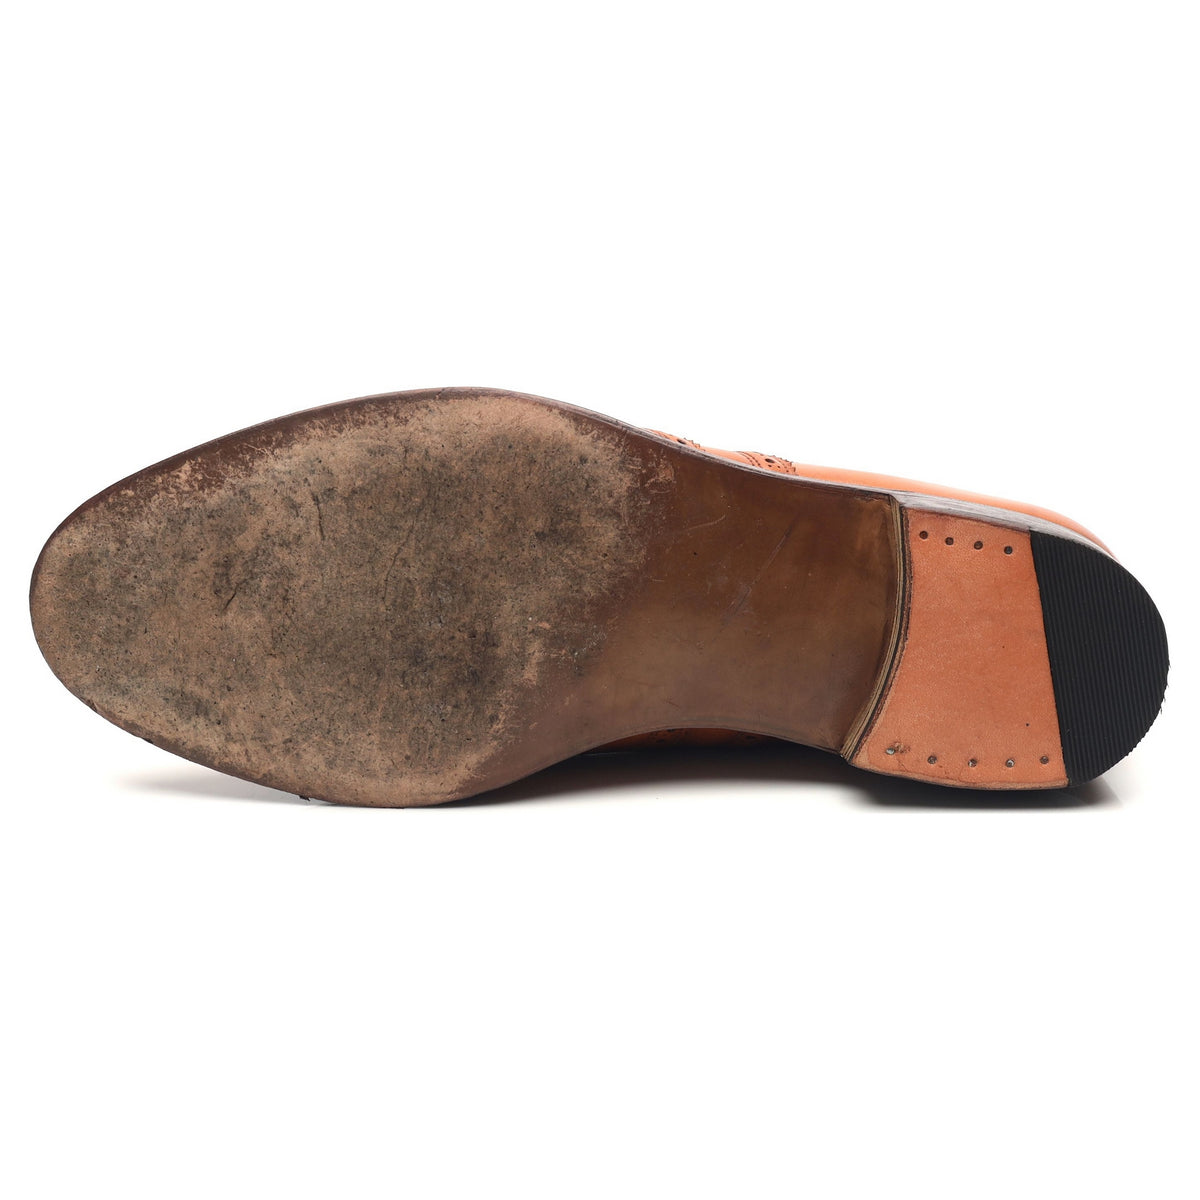 Vintage Tan Brown Leather Brogues UK 7.5